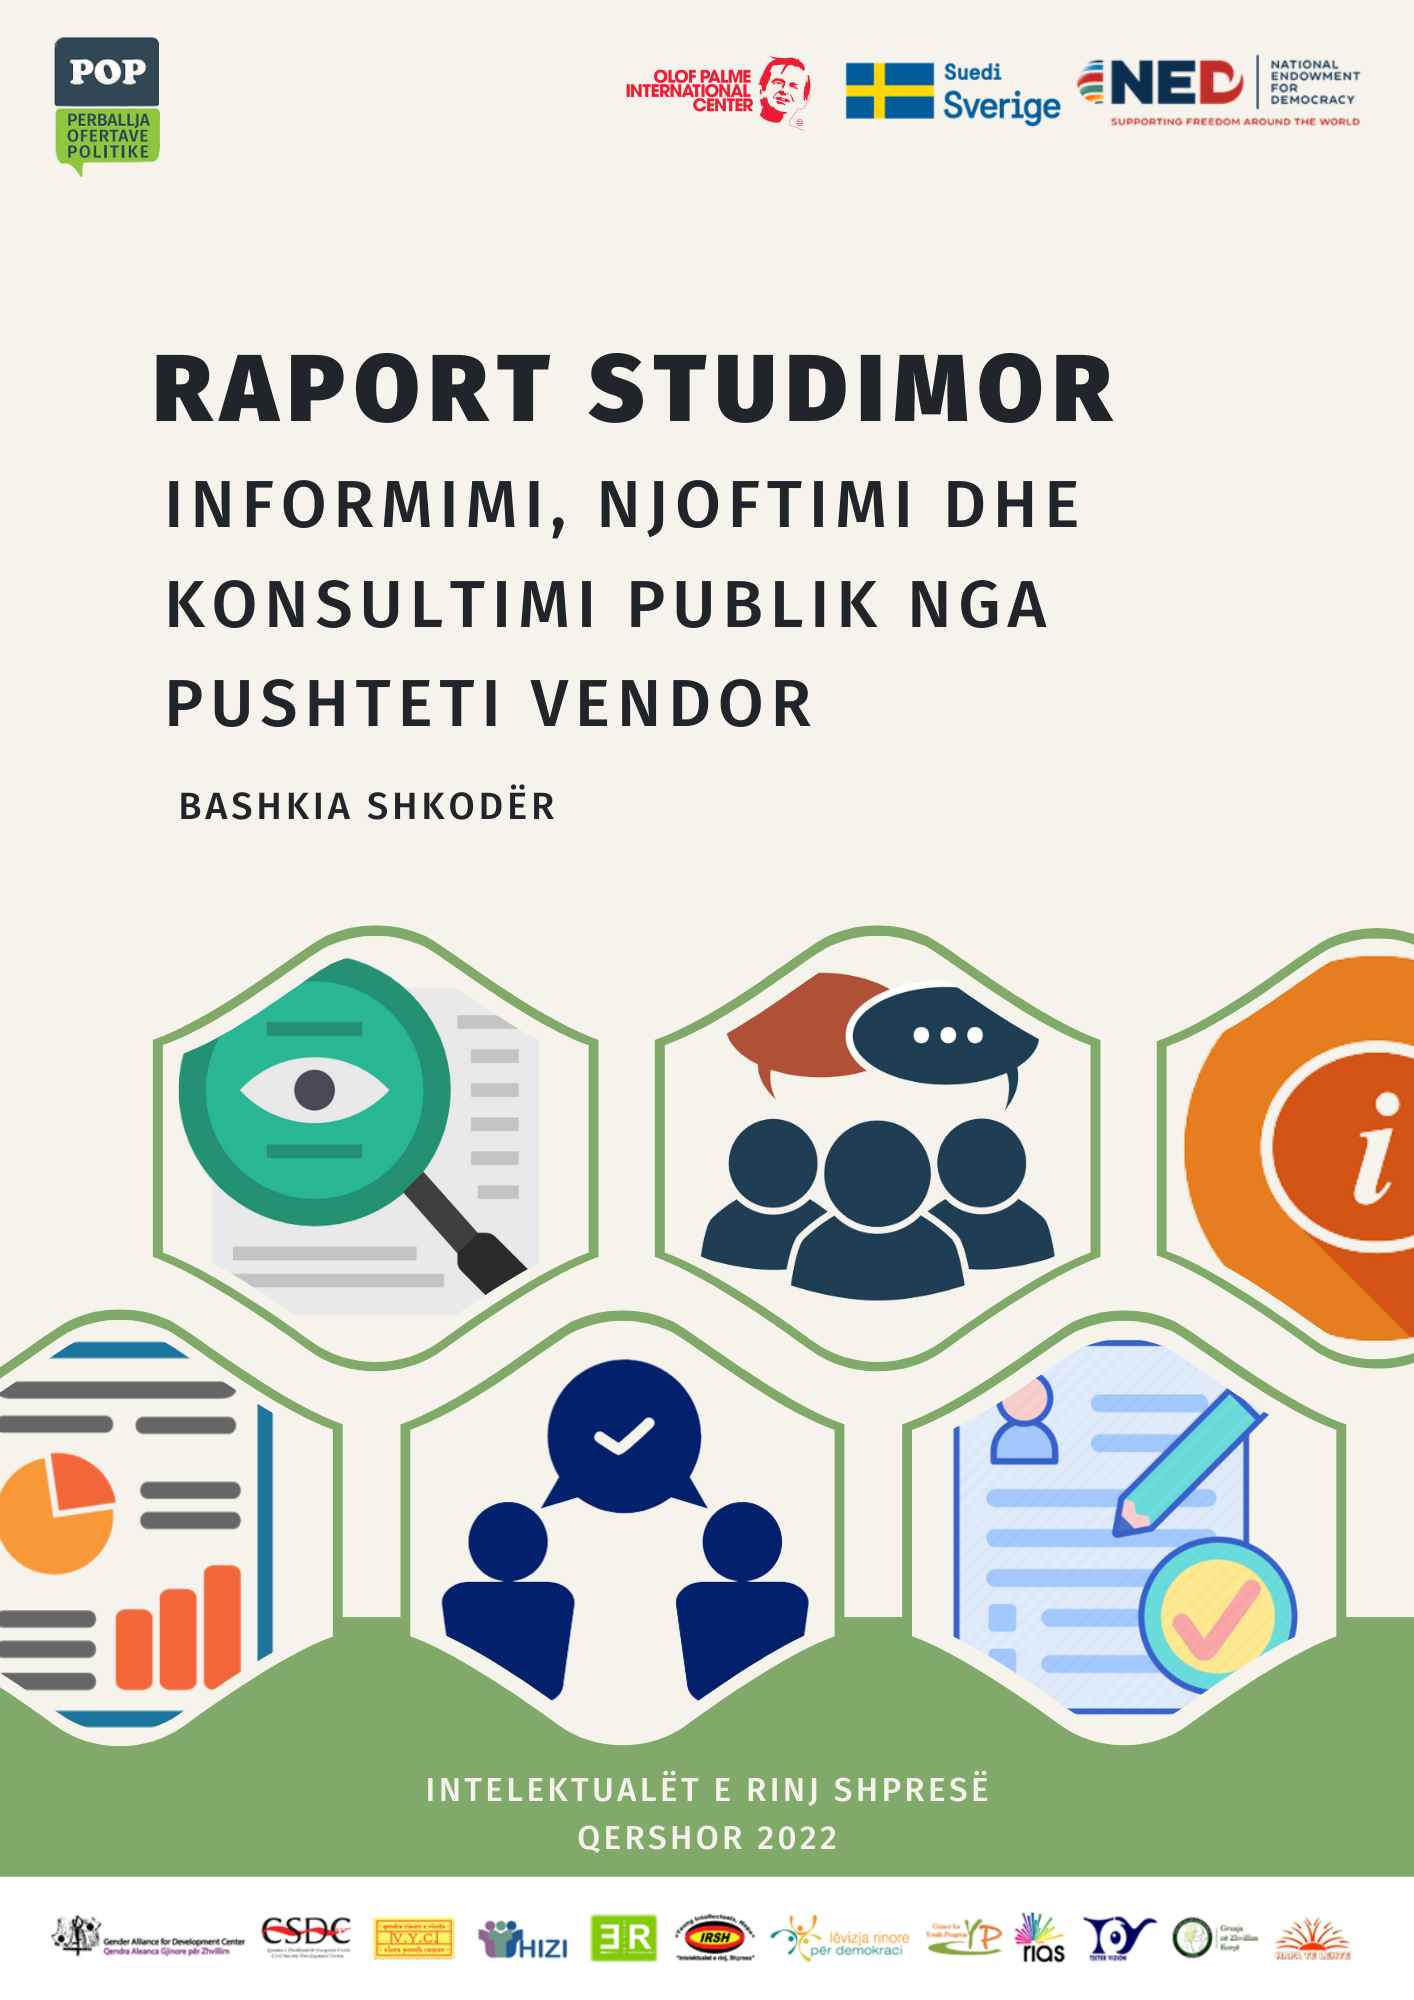 Raporti Studimor “Informimi, Njoftimi dhe Konsultimi Publik” – Bashkia Shkodër